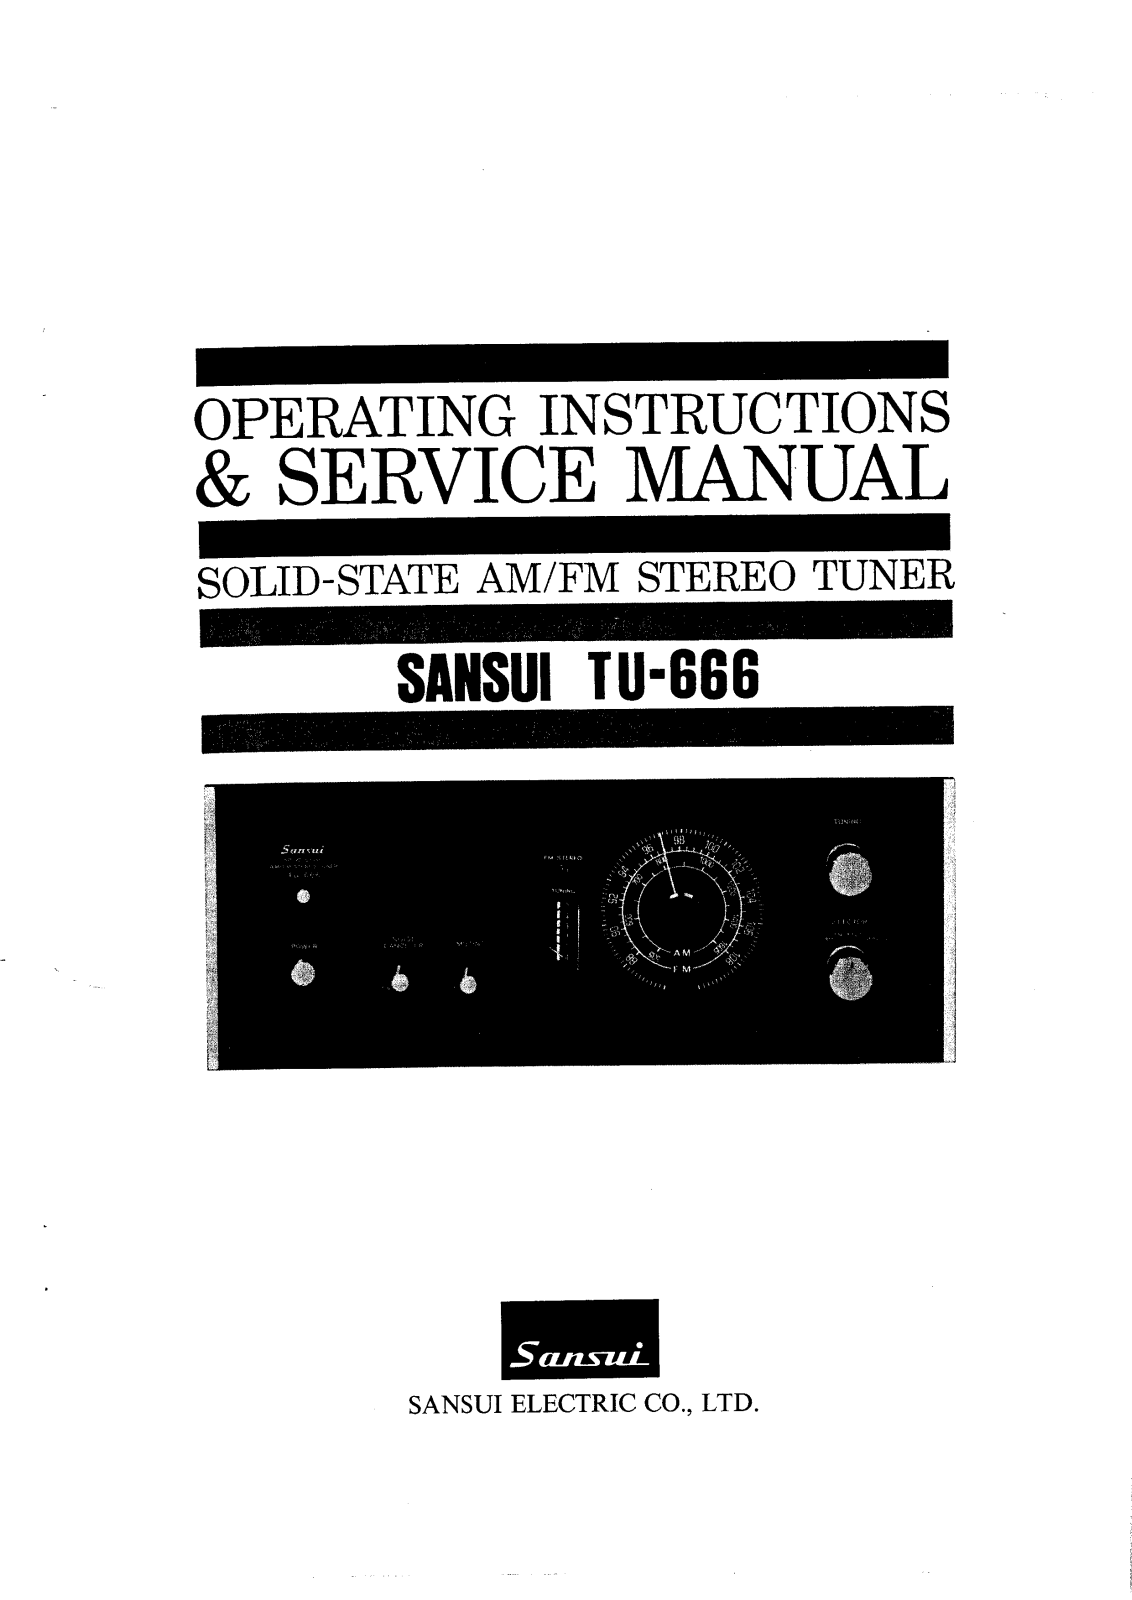 Sansui TU-666 Service Manual